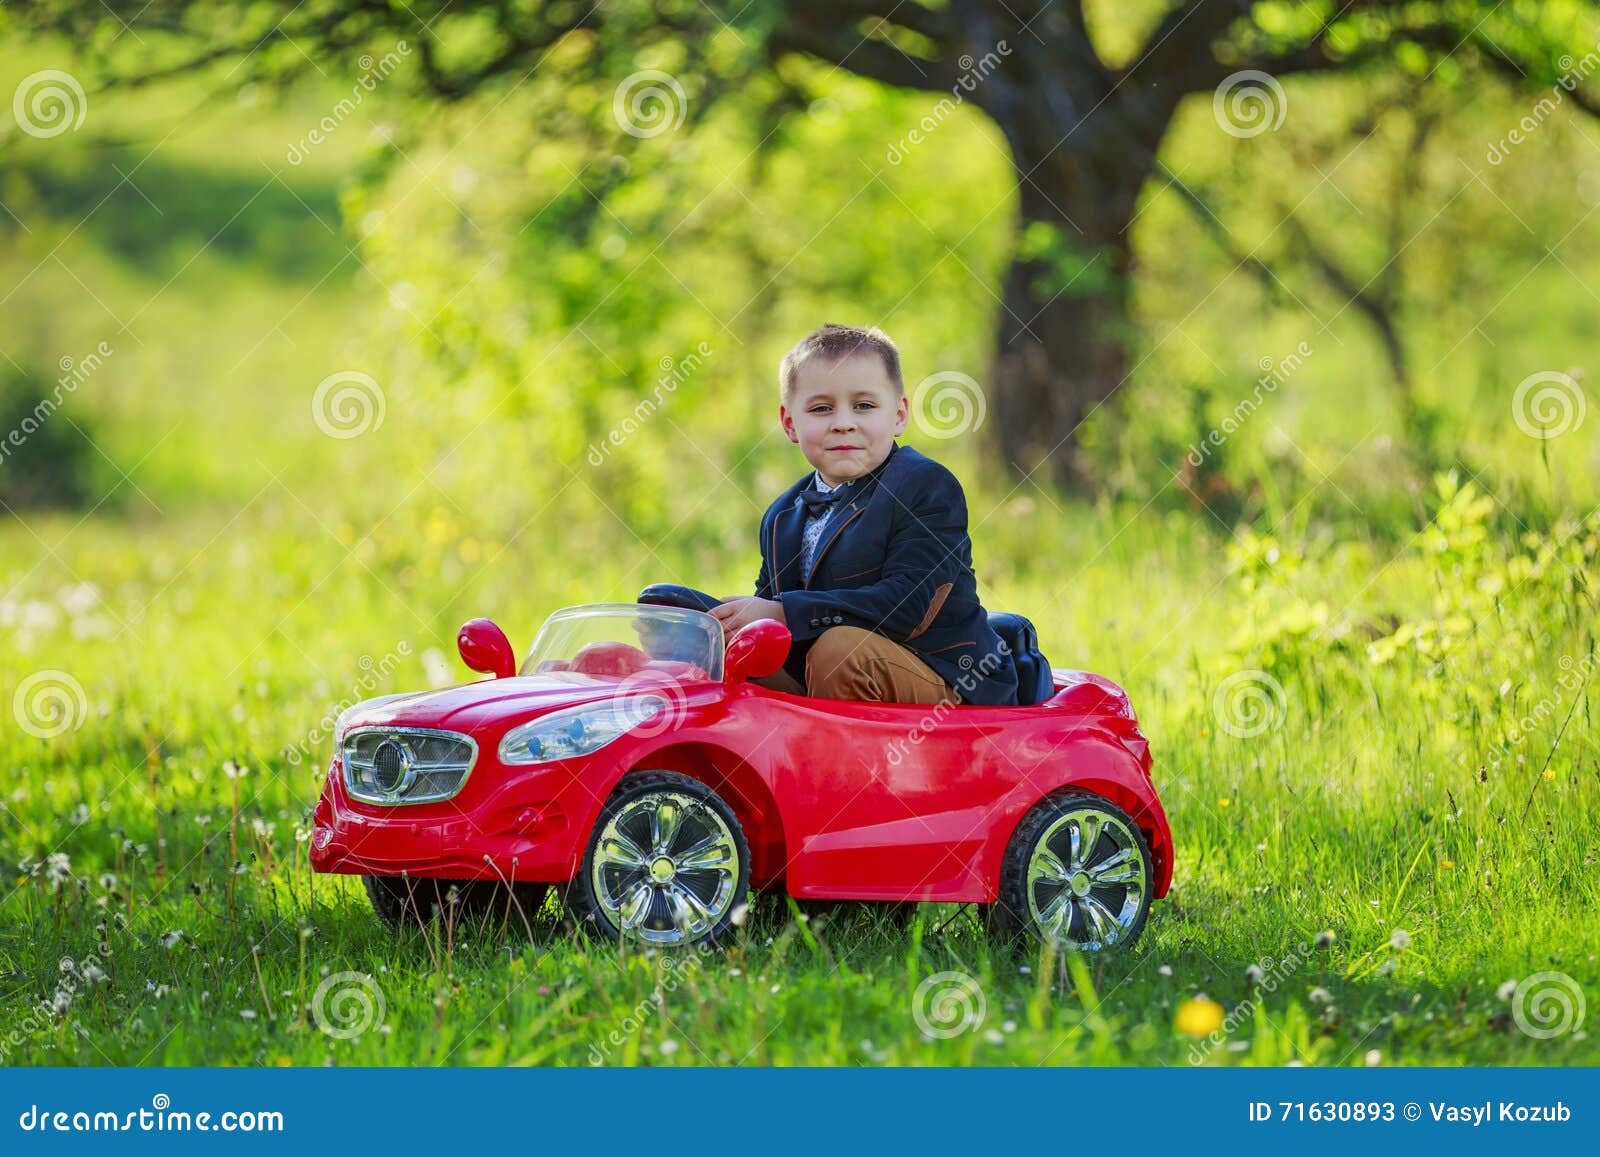 Песни мальчик на машине. Мальчик катается на красной машине. Мальчик на красной машине. Мальчик едет на машине. Машина для мальчика кататься.